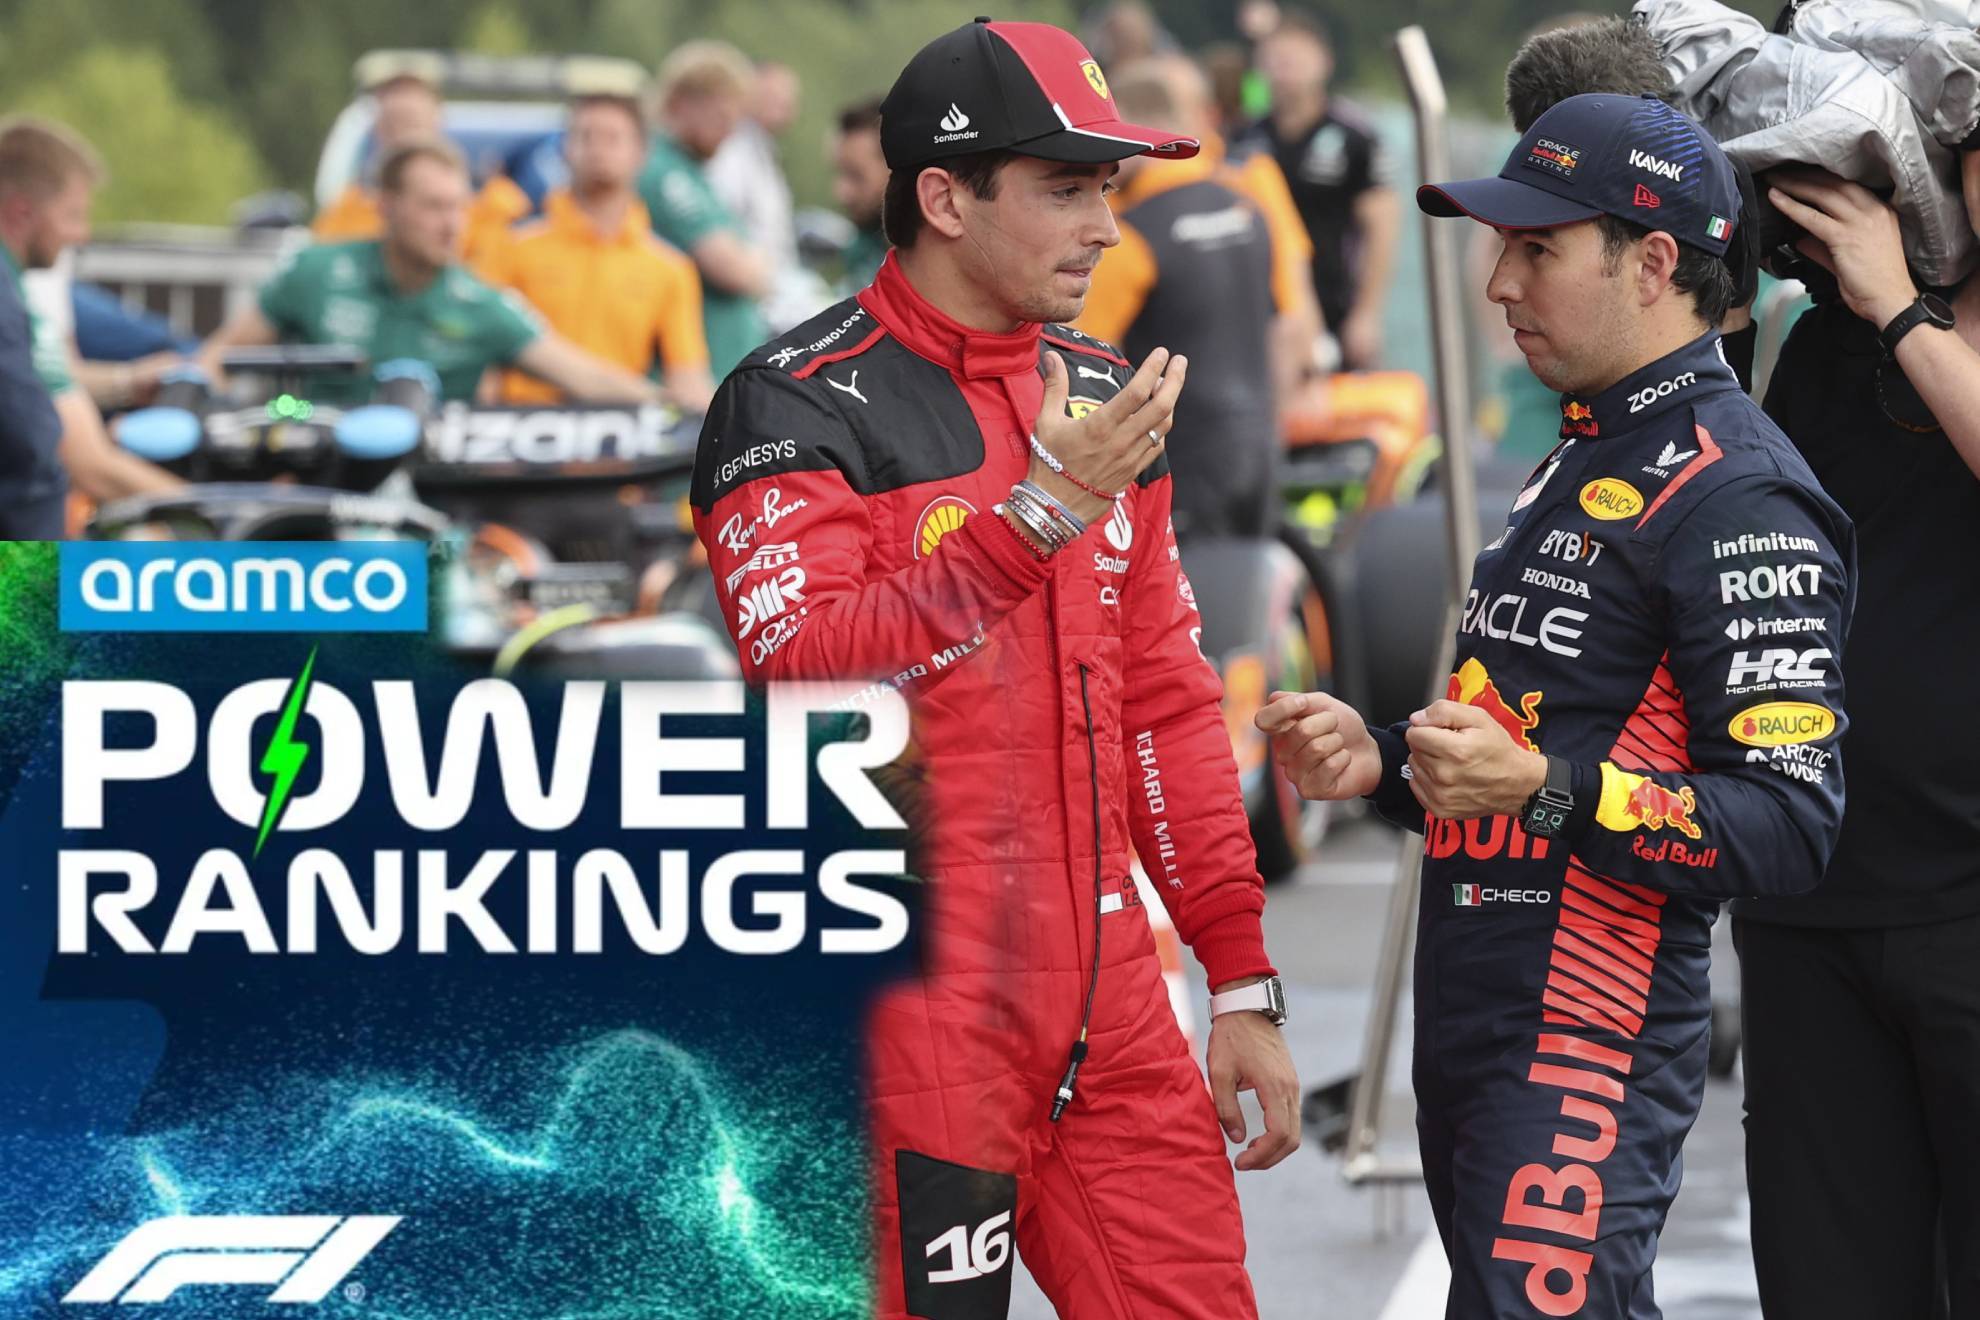 Power Rankings del GP de Brasil hacen el ridculo: Leclerc roza a Checo Prez